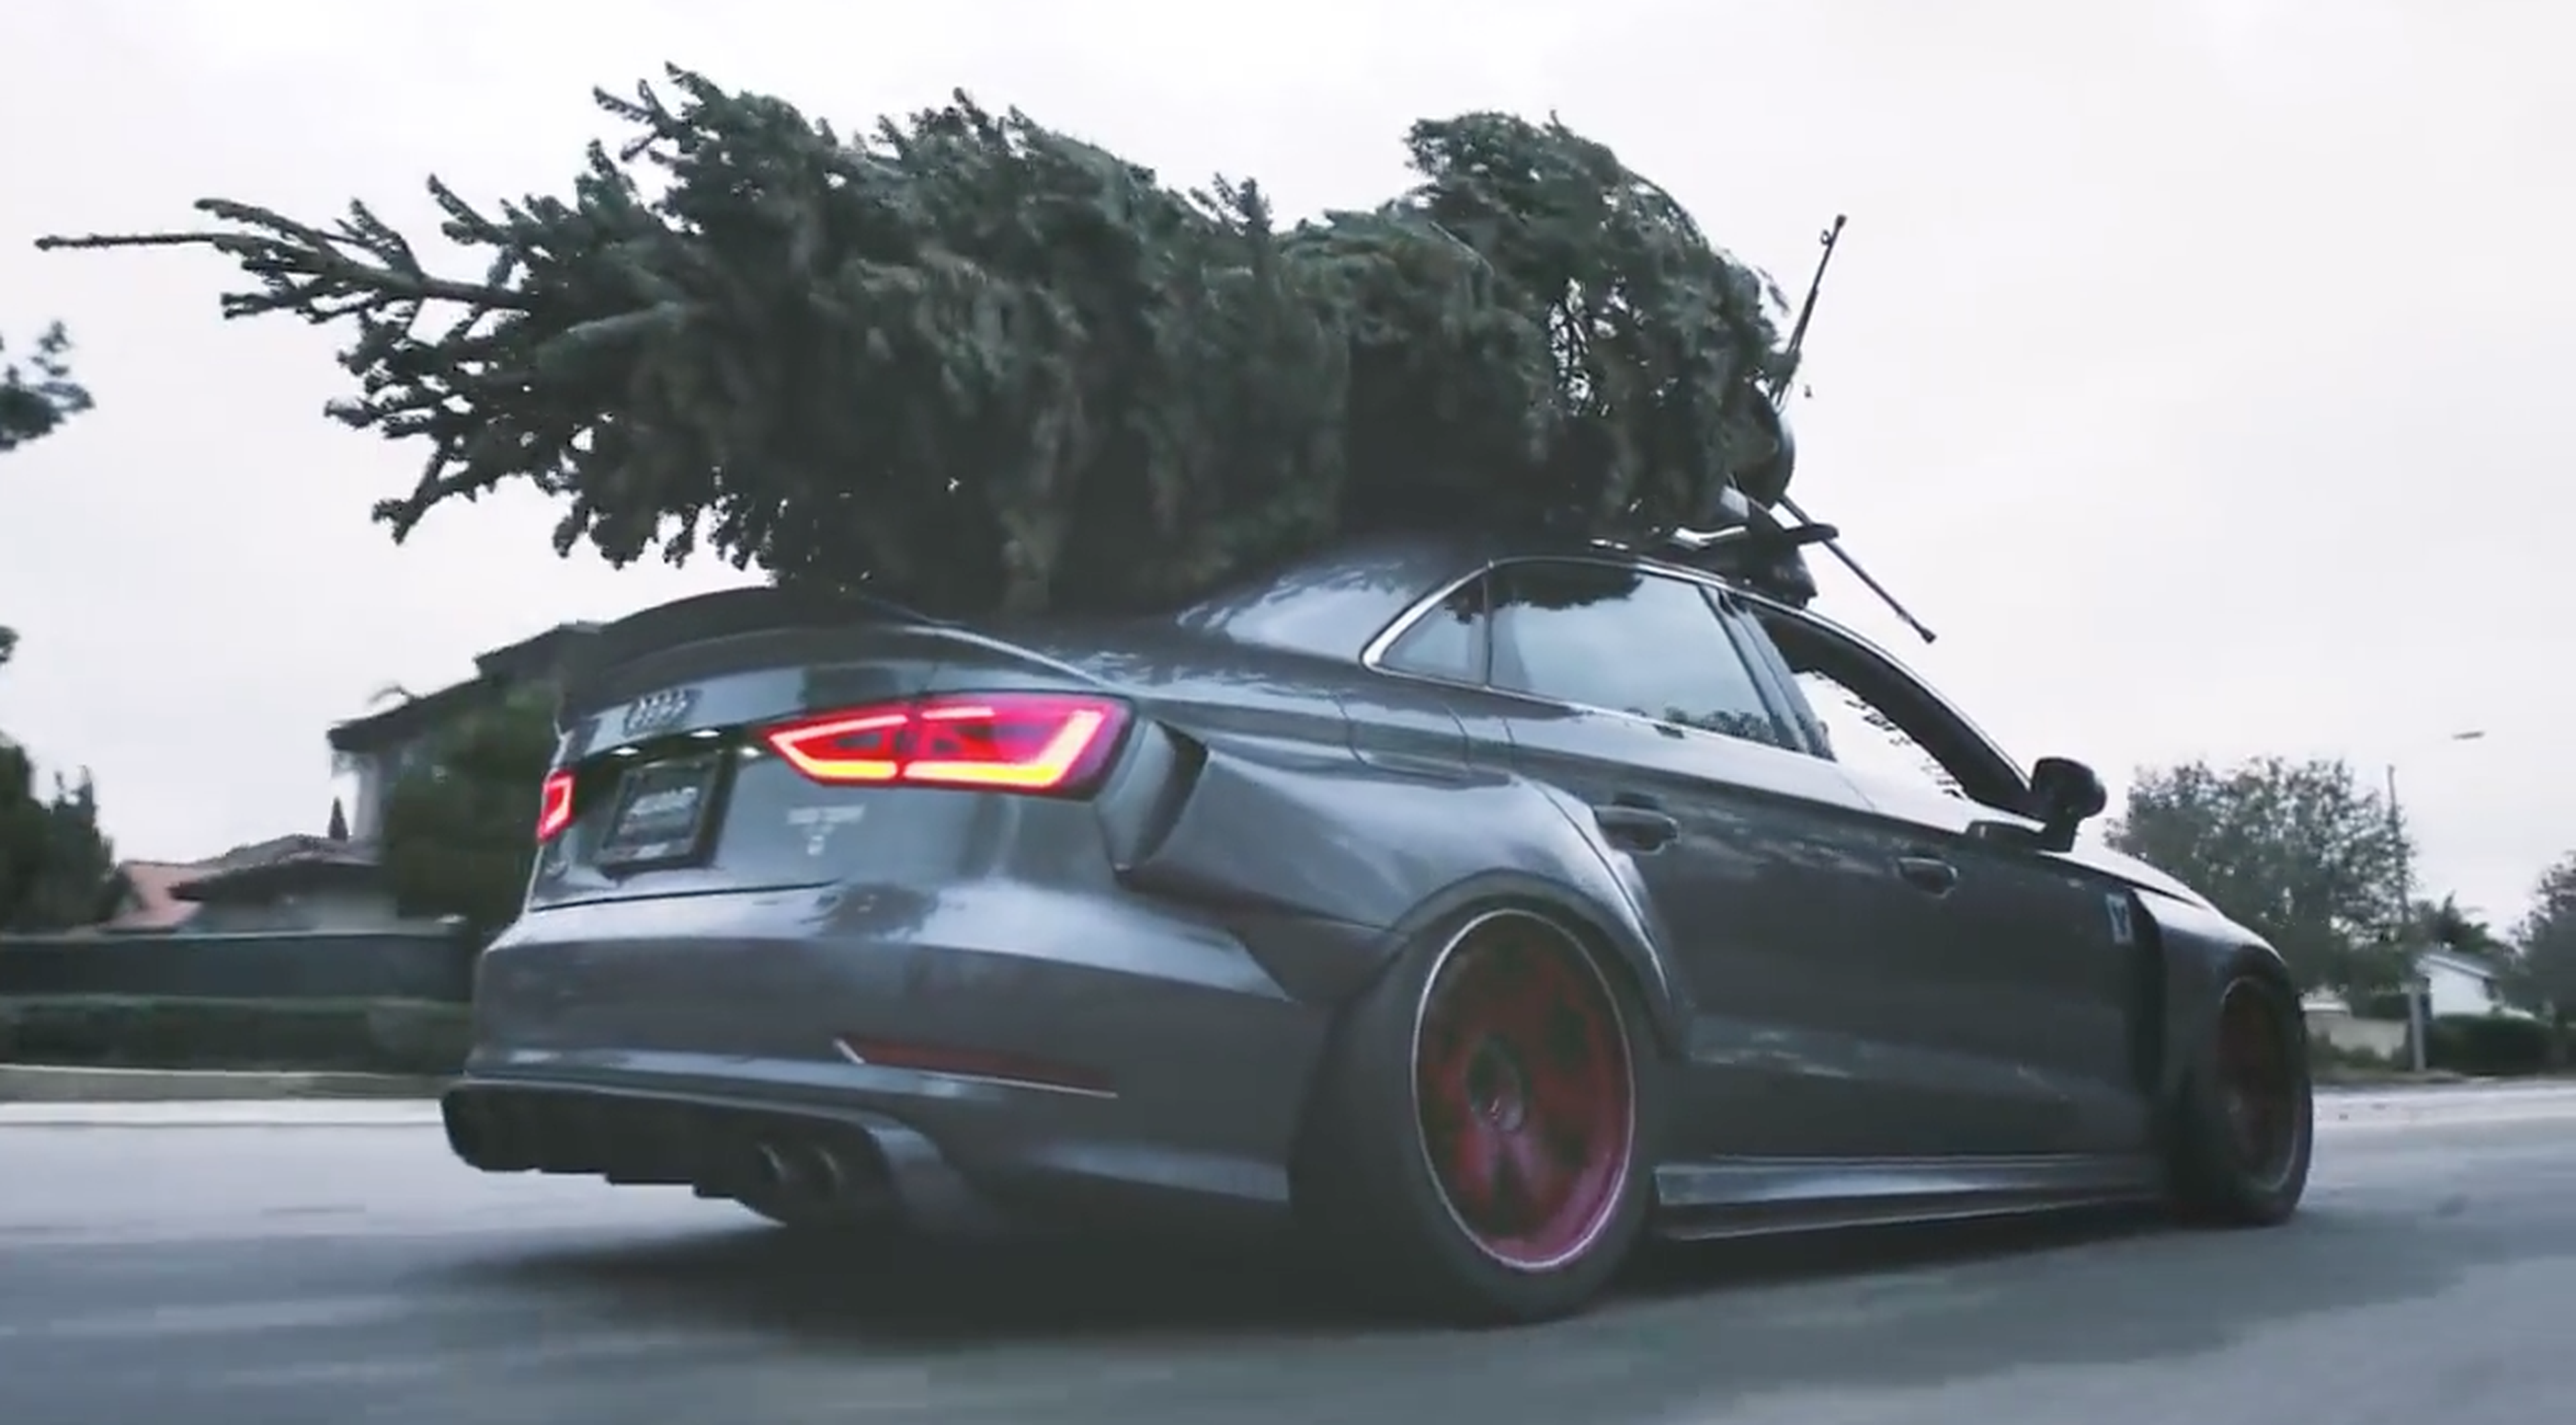 VÍDEO: ¡Navidad a lo grande con este Audi S3 radical!